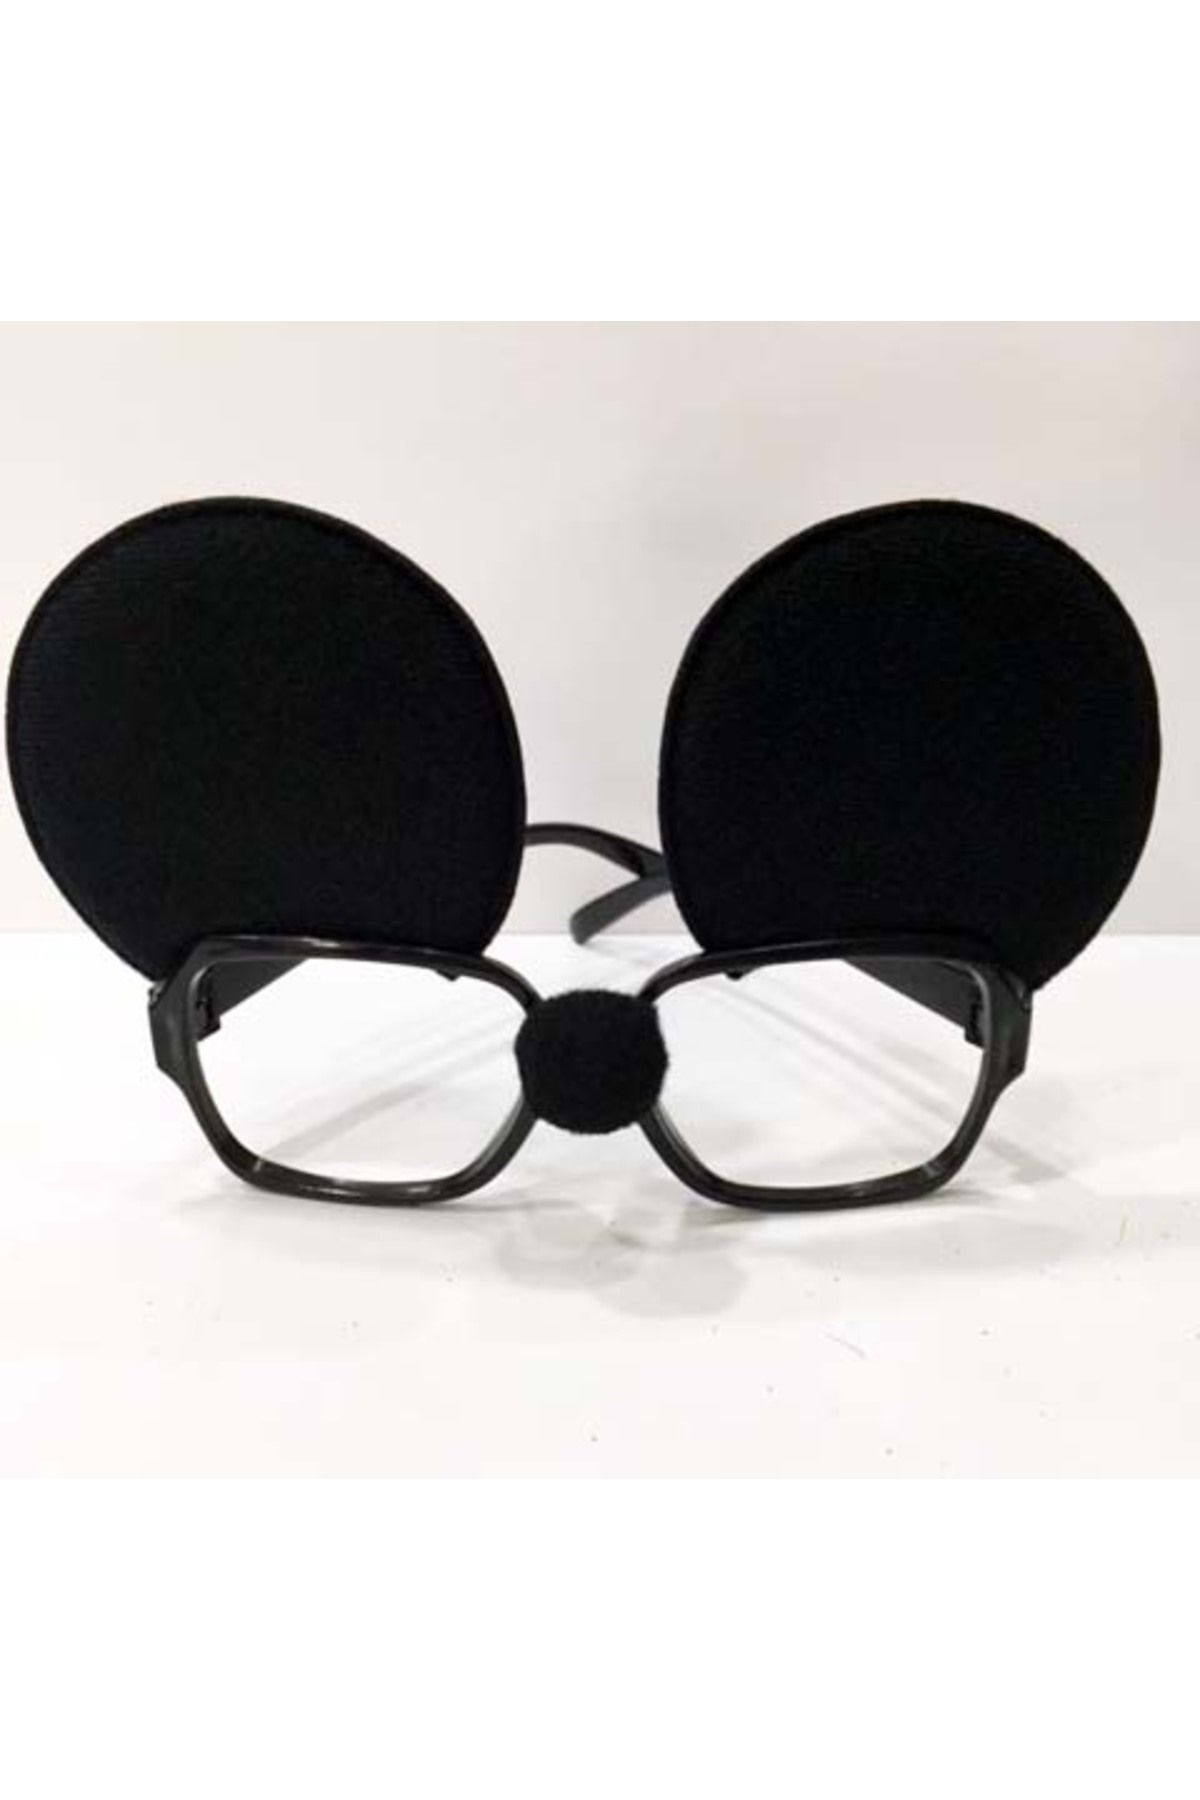 hebrarshop Mickey Mouse Gözlüğü